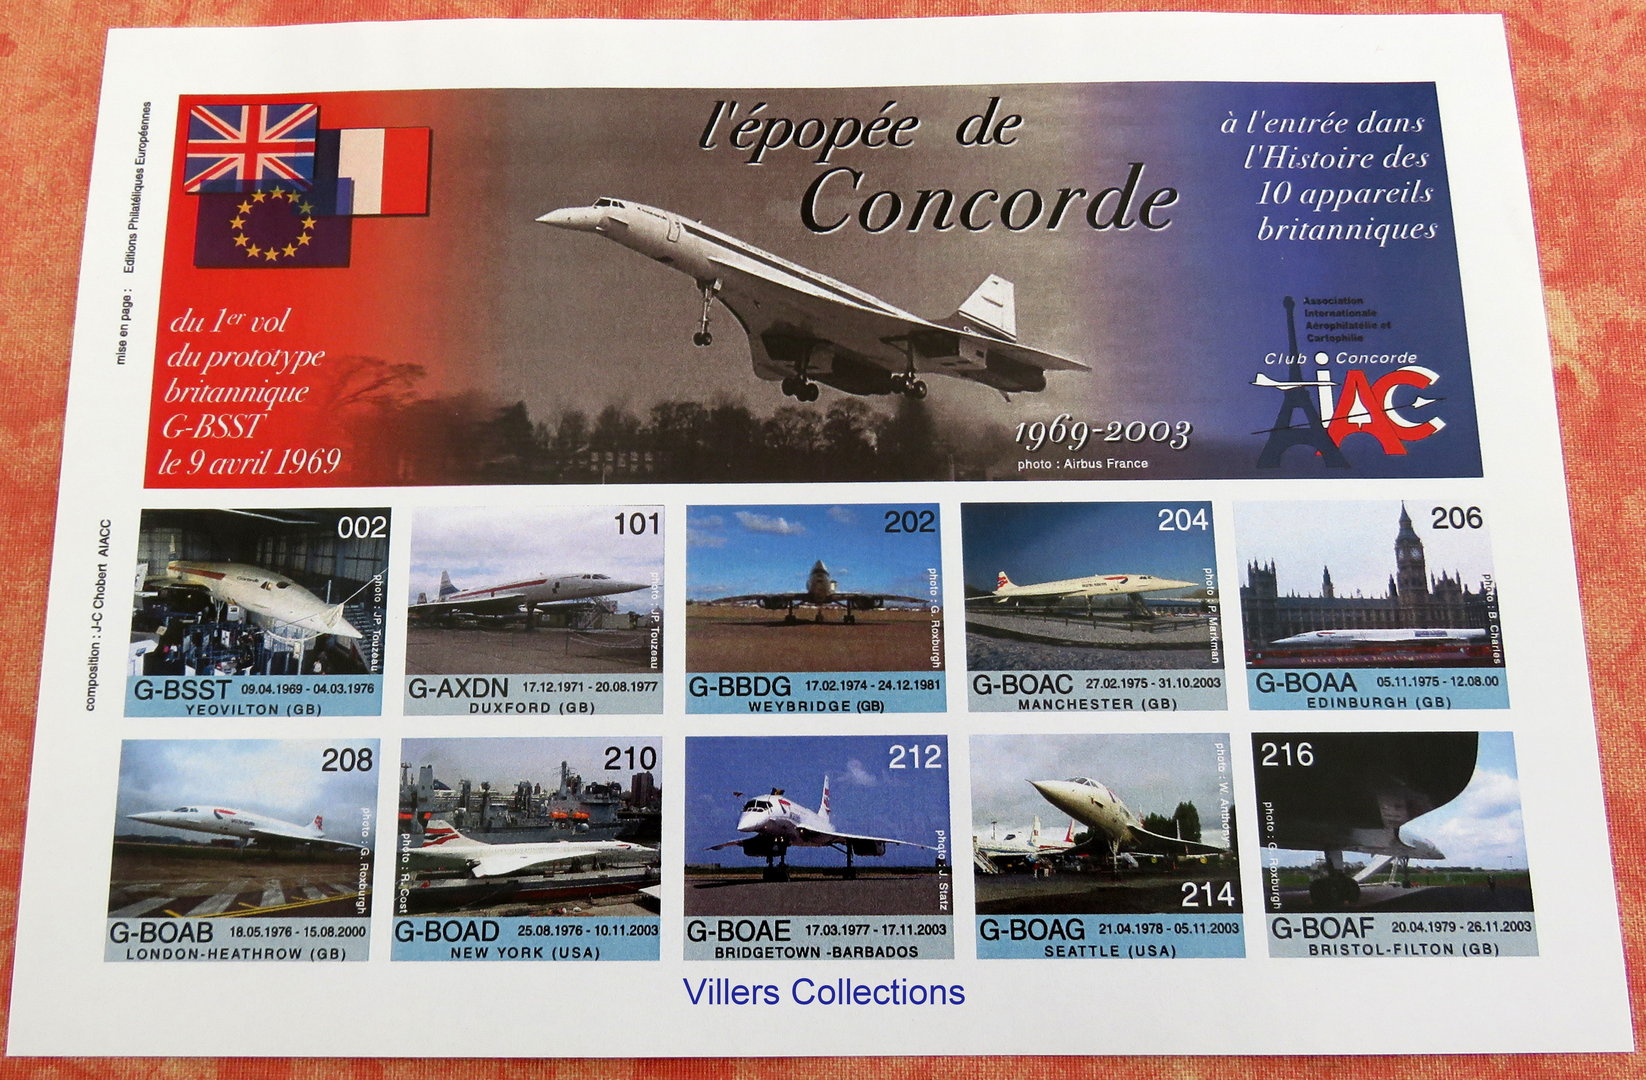 Le premier vol du Concorde 9 avril 1969 Médaille en cuivre doré 2009 